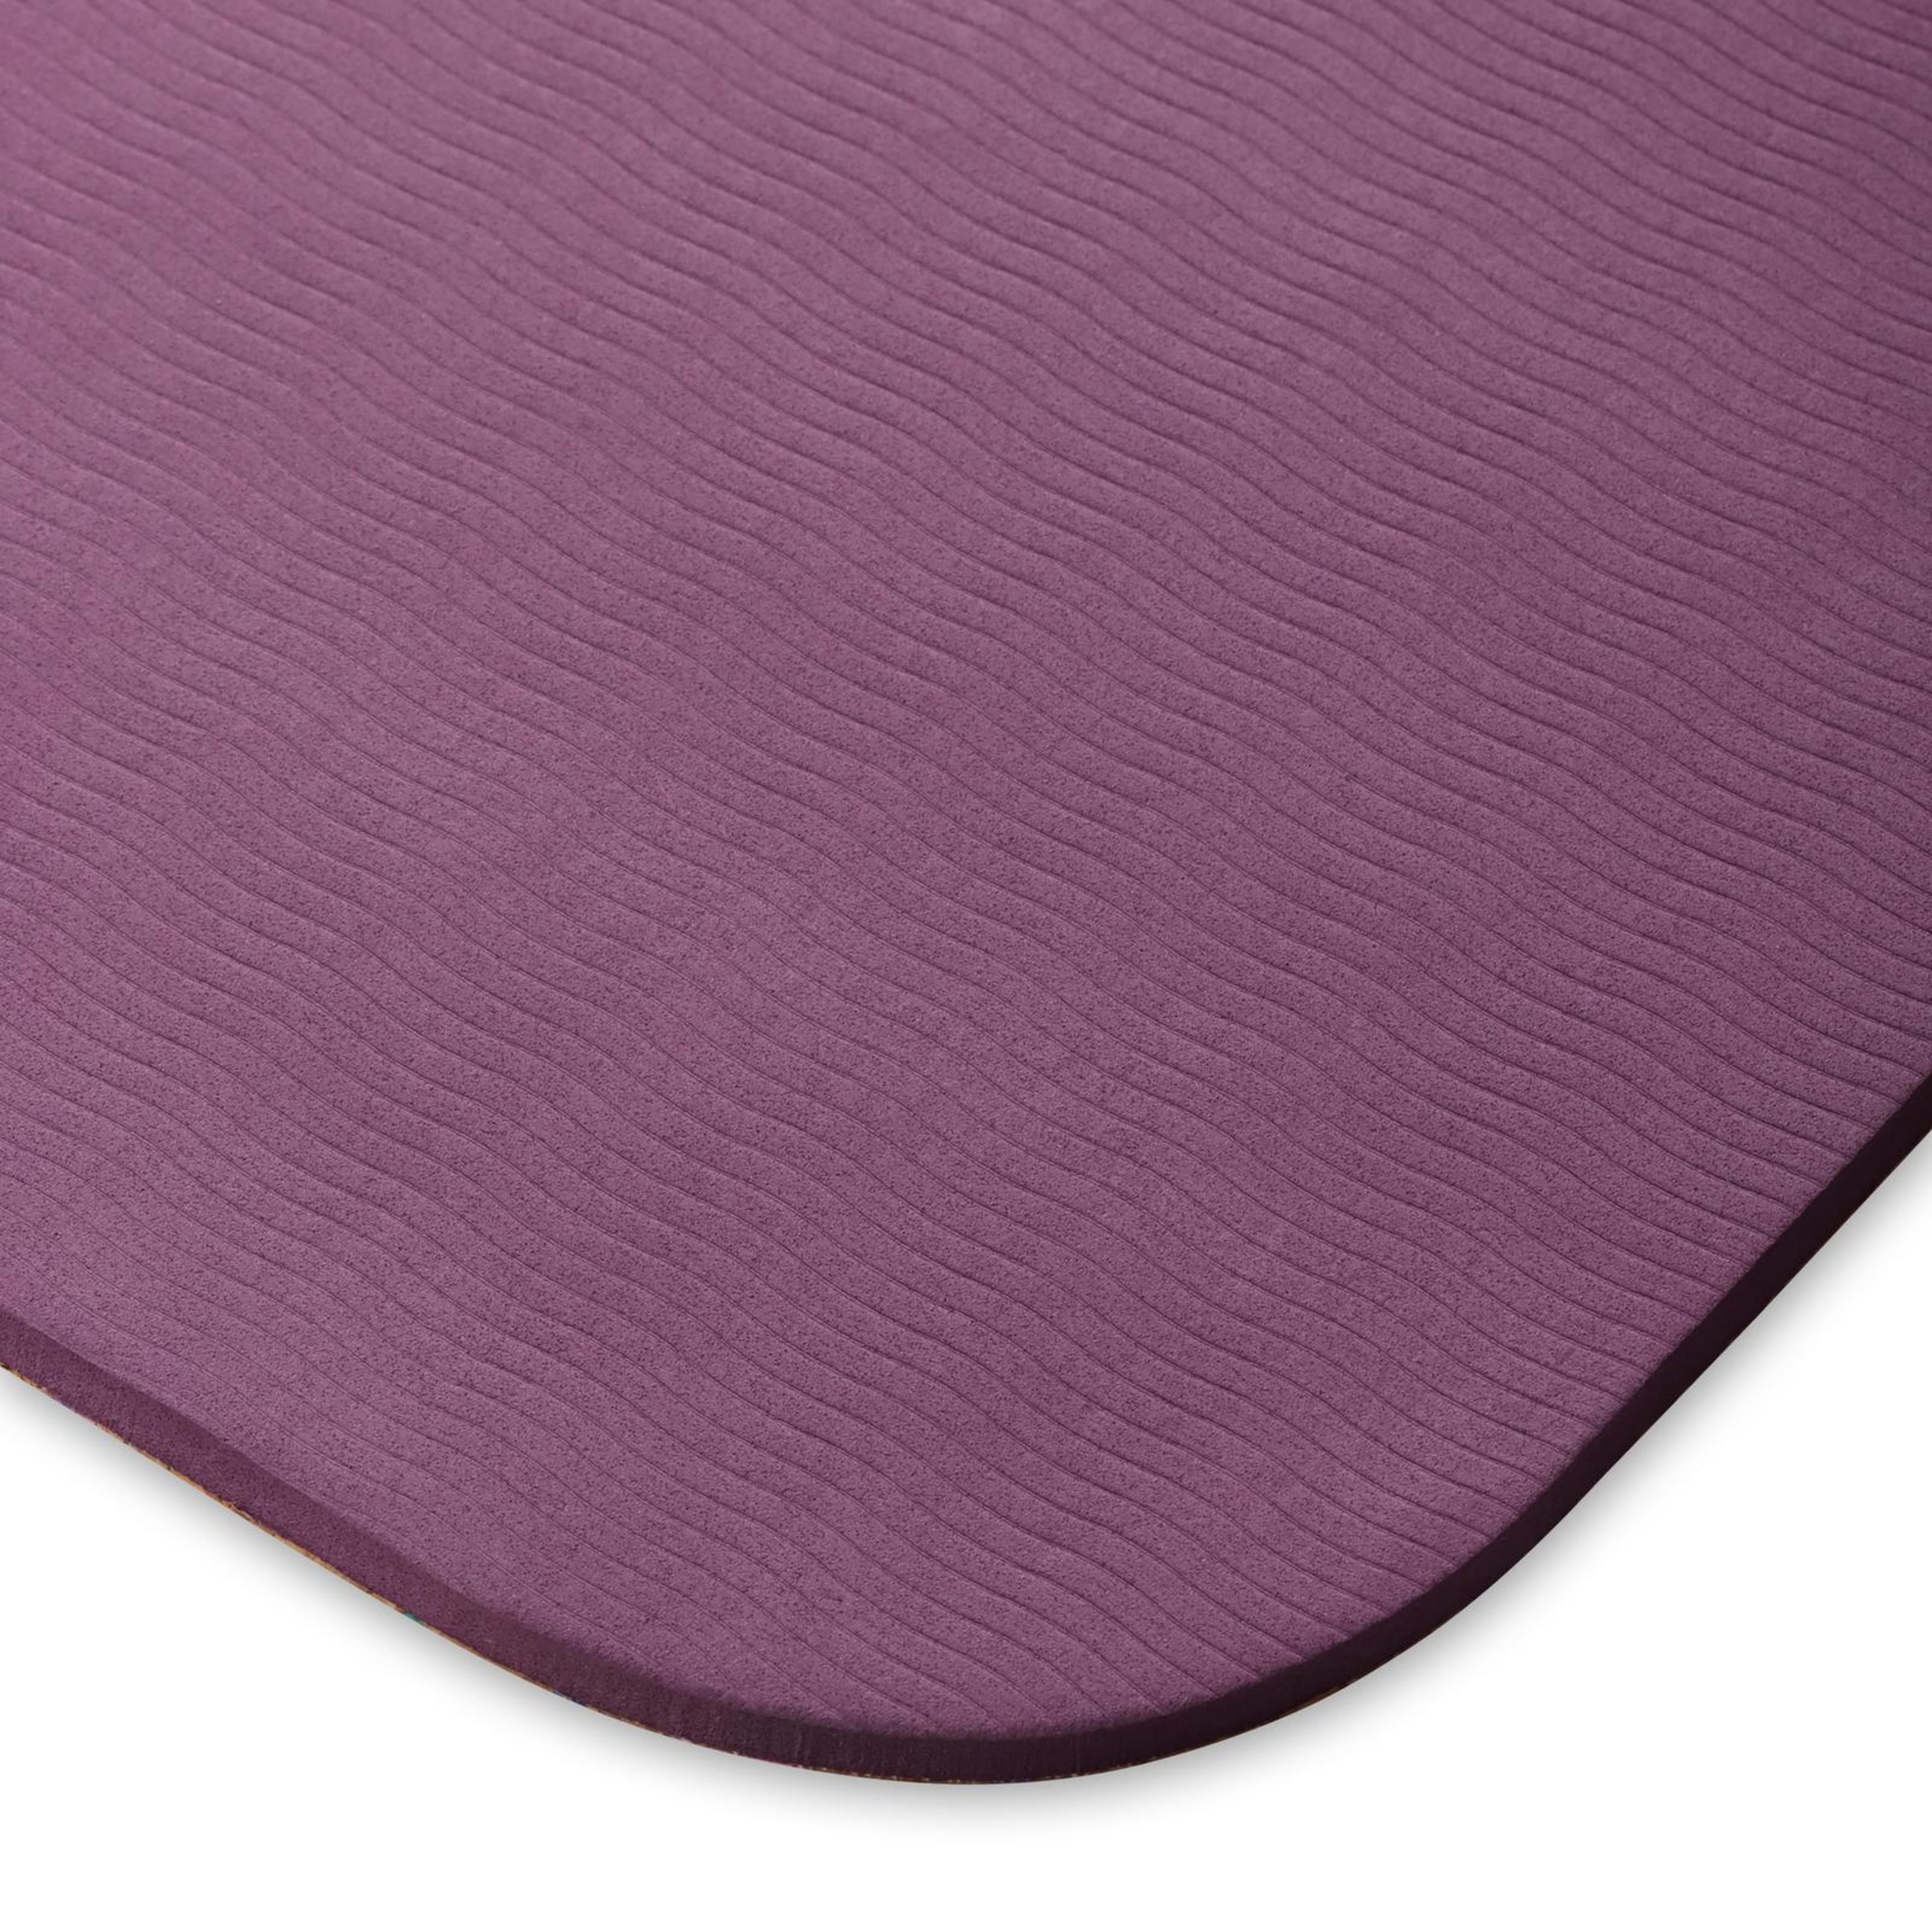 Esterilla de Yoga y Fitness TPE y CORCHO INDIGO 173* 61* 0,6 cm Marrón- Violeta